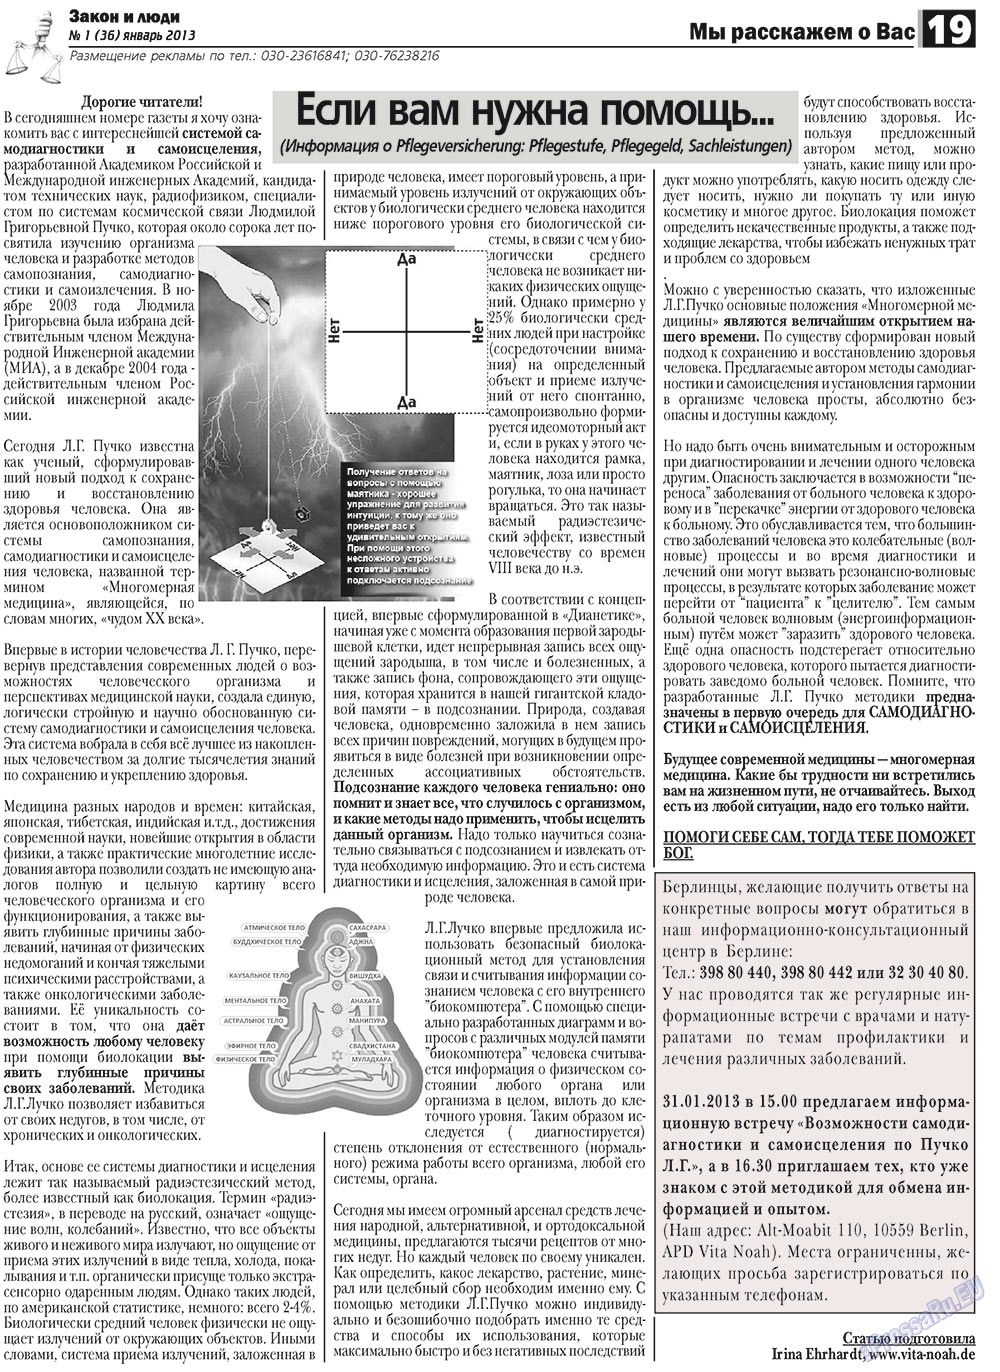 Закон и люди (газета). 2013 год, номер 1, стр. 19